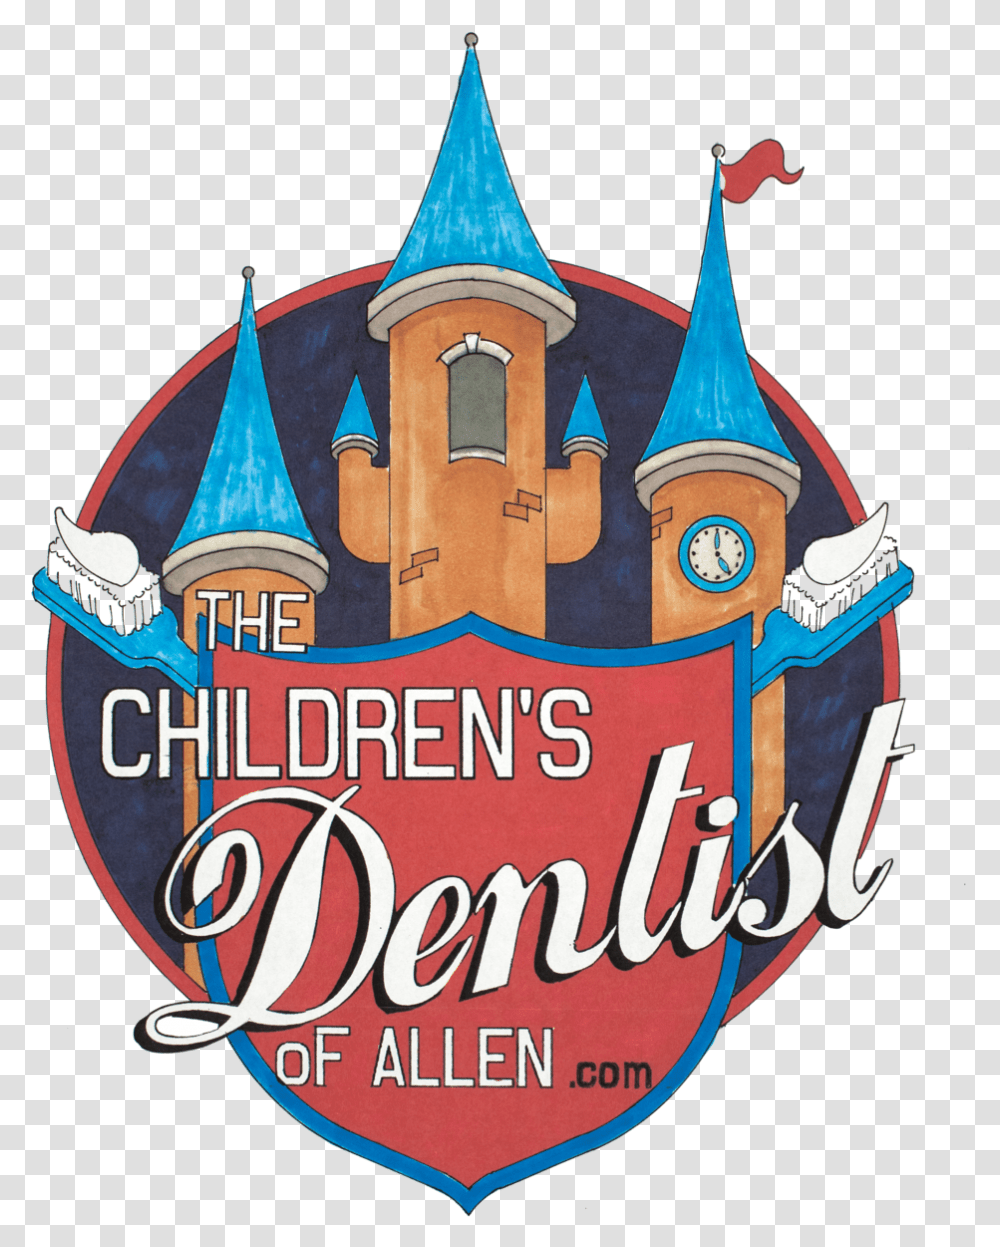 The Children's Dentist Of Allen Children, Spire, Tower, Architecture, Building Transparent Png